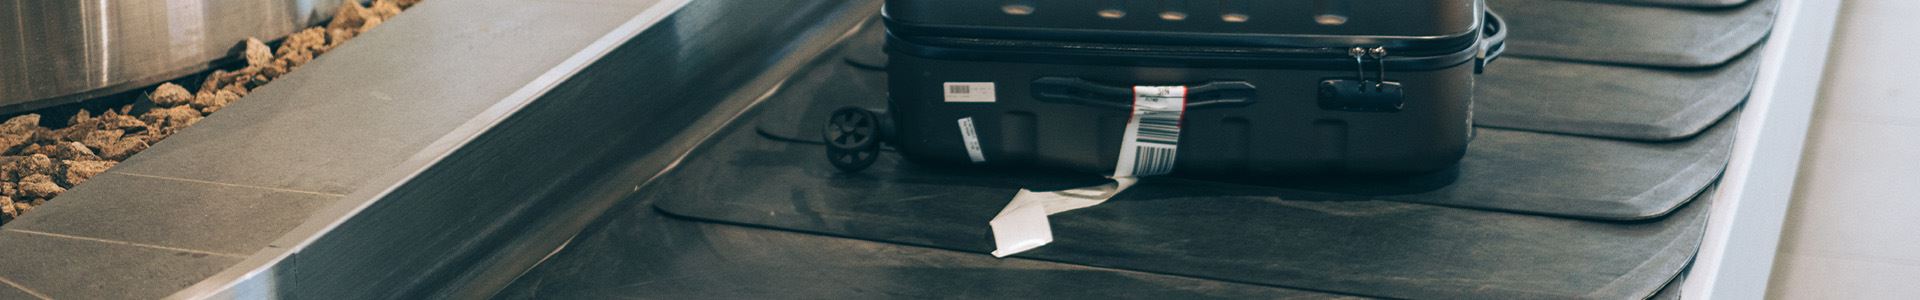 Imagen que consiste en una maleta negra rígida con ruedas, asas superior y lateral y una etiqueta de equipaje blanca en el asa lateral, colocada sobre una alfombrilla de recogida de equipajes del aeropuerto.